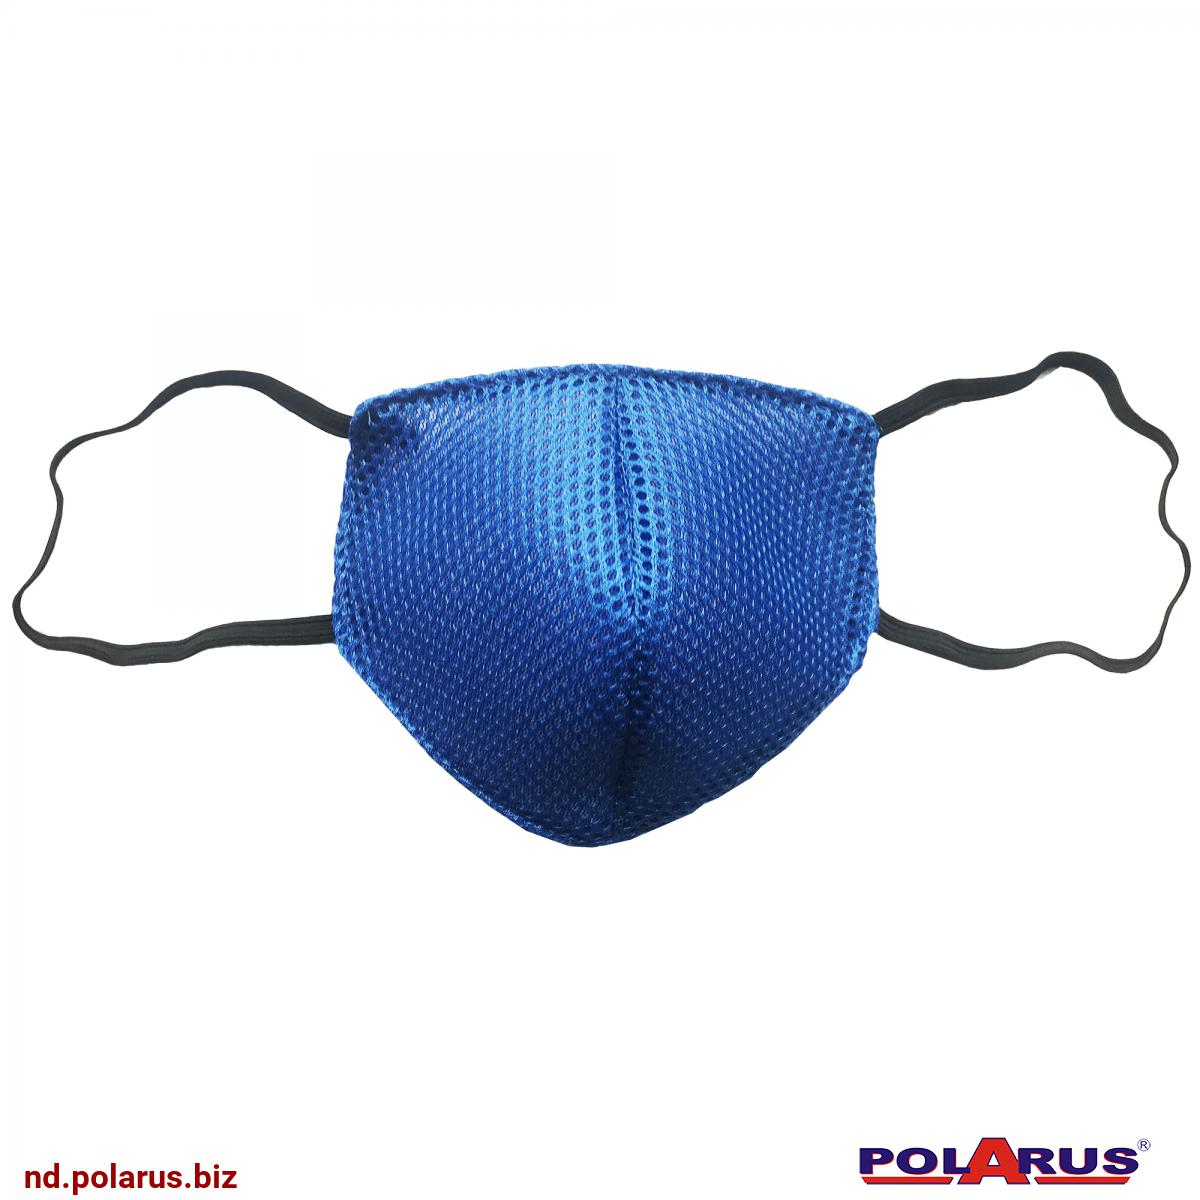 Маска защитная для маникюра (многоразовая) - синяя Предназначена для защиты дыхательных путей. Полностью закрывает рот, нос и нижнюю часть лица. Композитная - 3-ёх слойное исполнение 3D-полиэстер + 2 слоя спанбонда